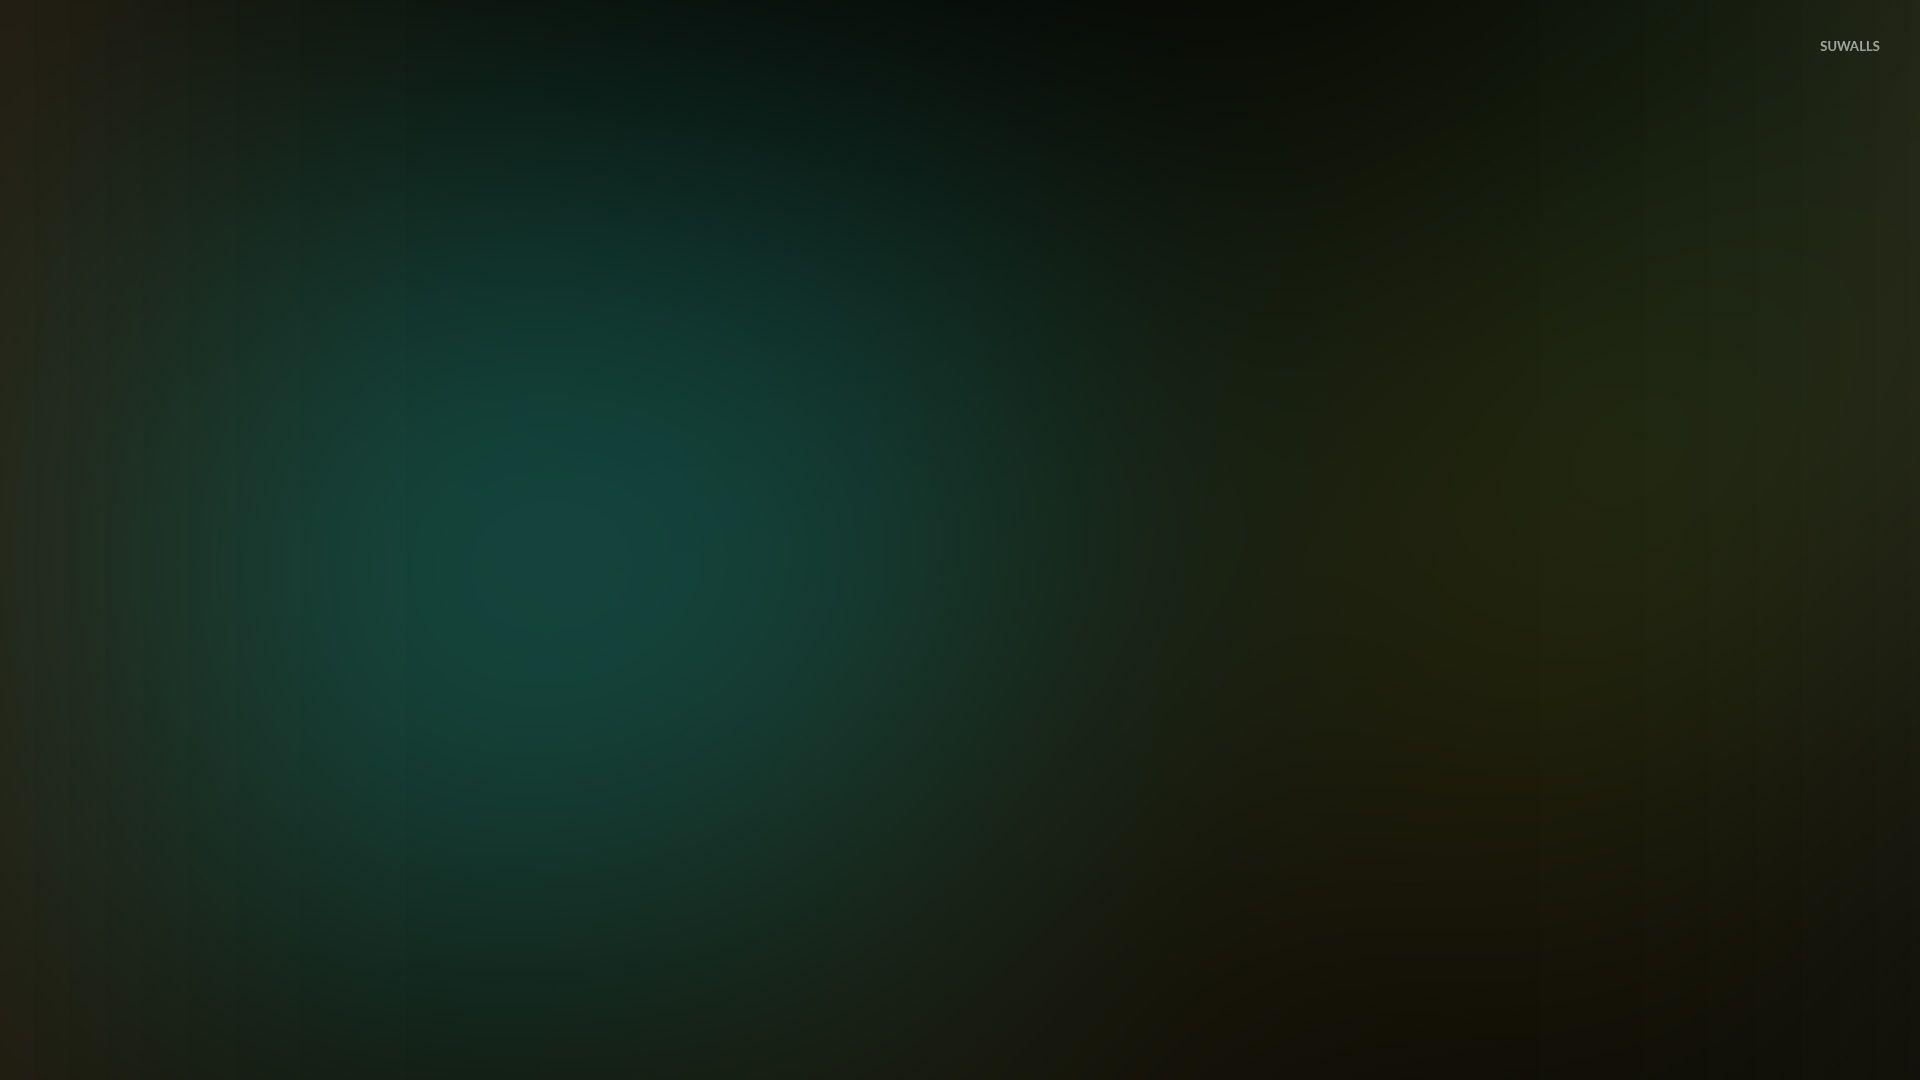 Hình nền xanh ngọc lục bảo cho máy tính của bạn sẽ làm bạn cảm thấy như đang ở trong một ngôi nhà mơ ước. Tông màu này không chỉ làm bạn cảm thấy thoải mái khi nhìn vào màn hình, mà còn giúp bạn tập trung hơn trong công việc. Tôn lên nét độc đáo của mình và cải thiện tinh thần của bạn với hình nền xanh ngọc lục bảo.